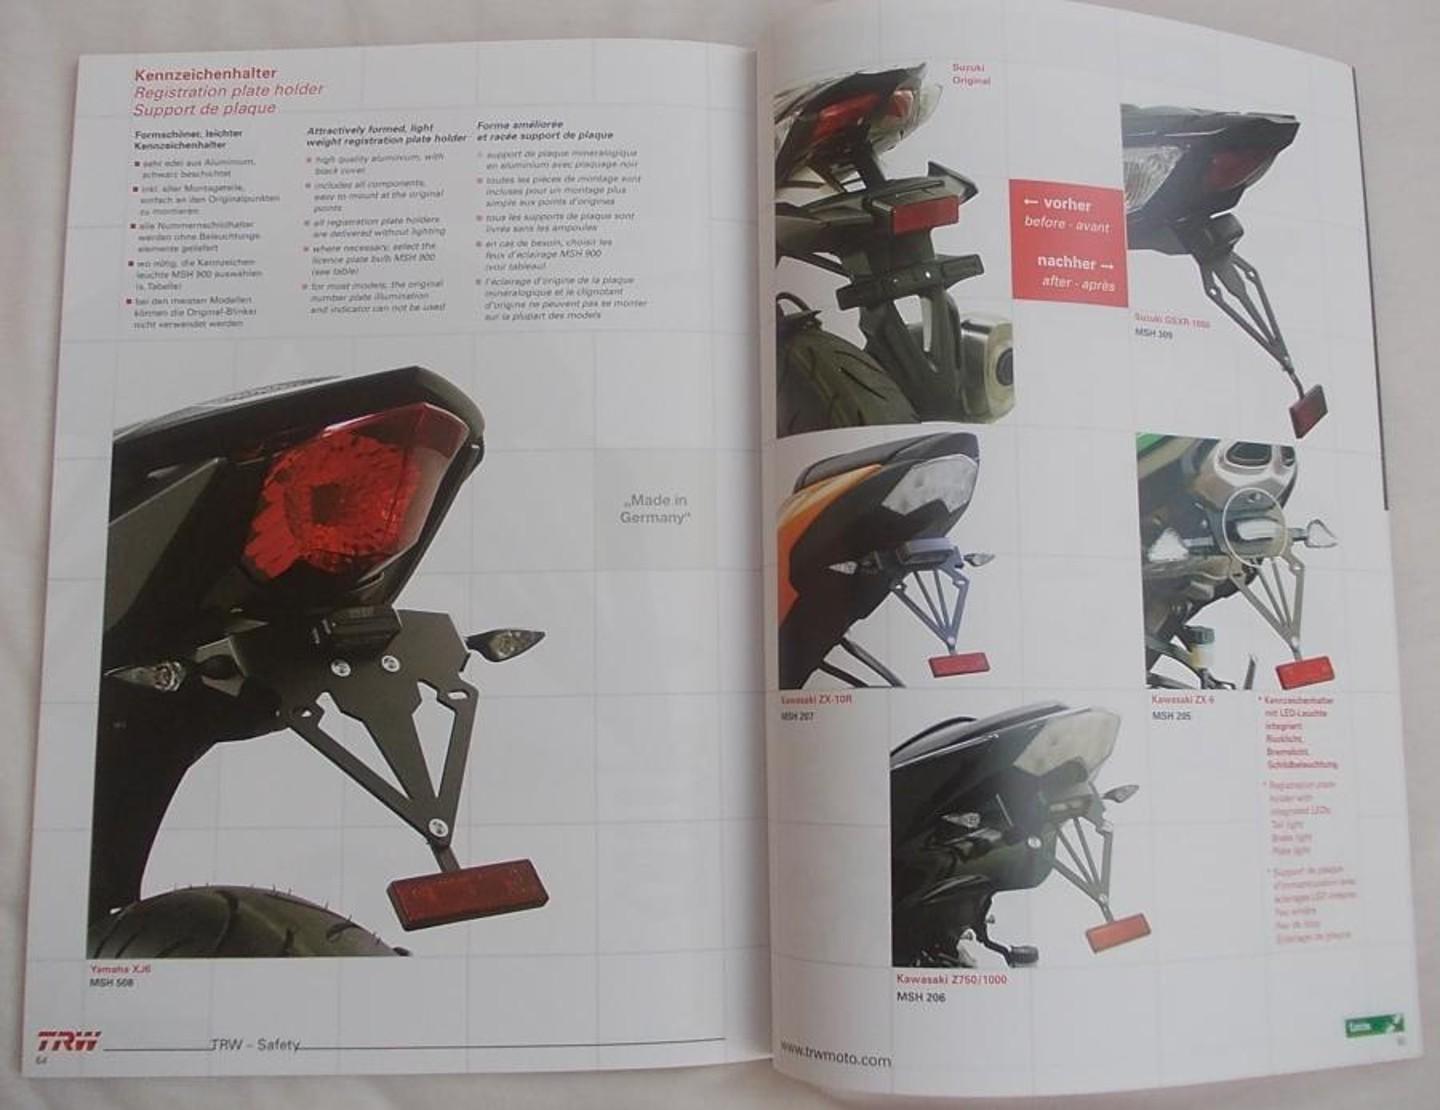 Katalog náhradních dílů  na motorky TRW Lucas + katalog příslušenství - Motoristická literatura